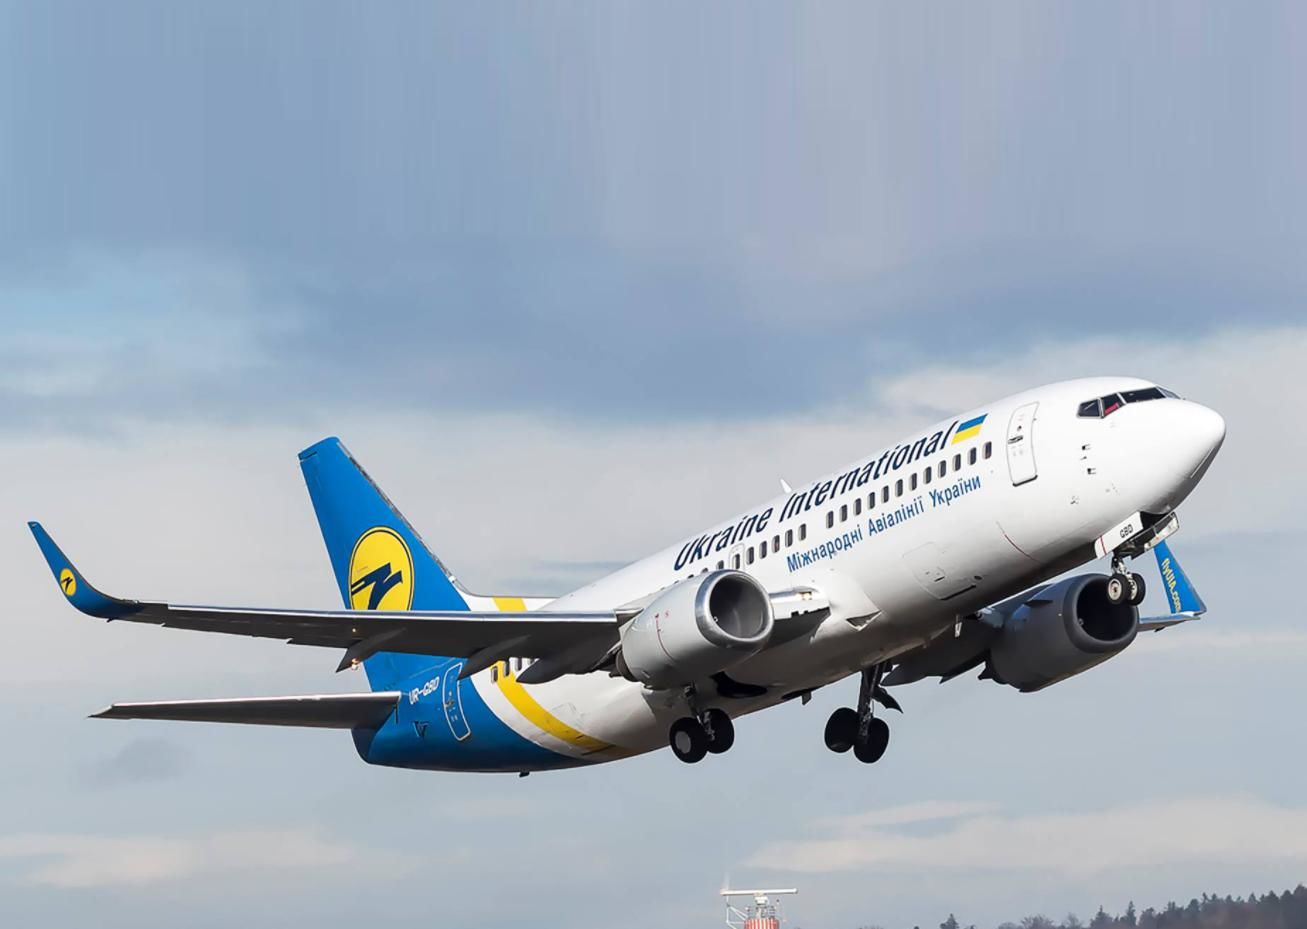 С понедельника воздушное пространство над Украиной закроют: авиакомпании отменяют рейсы - СМИ